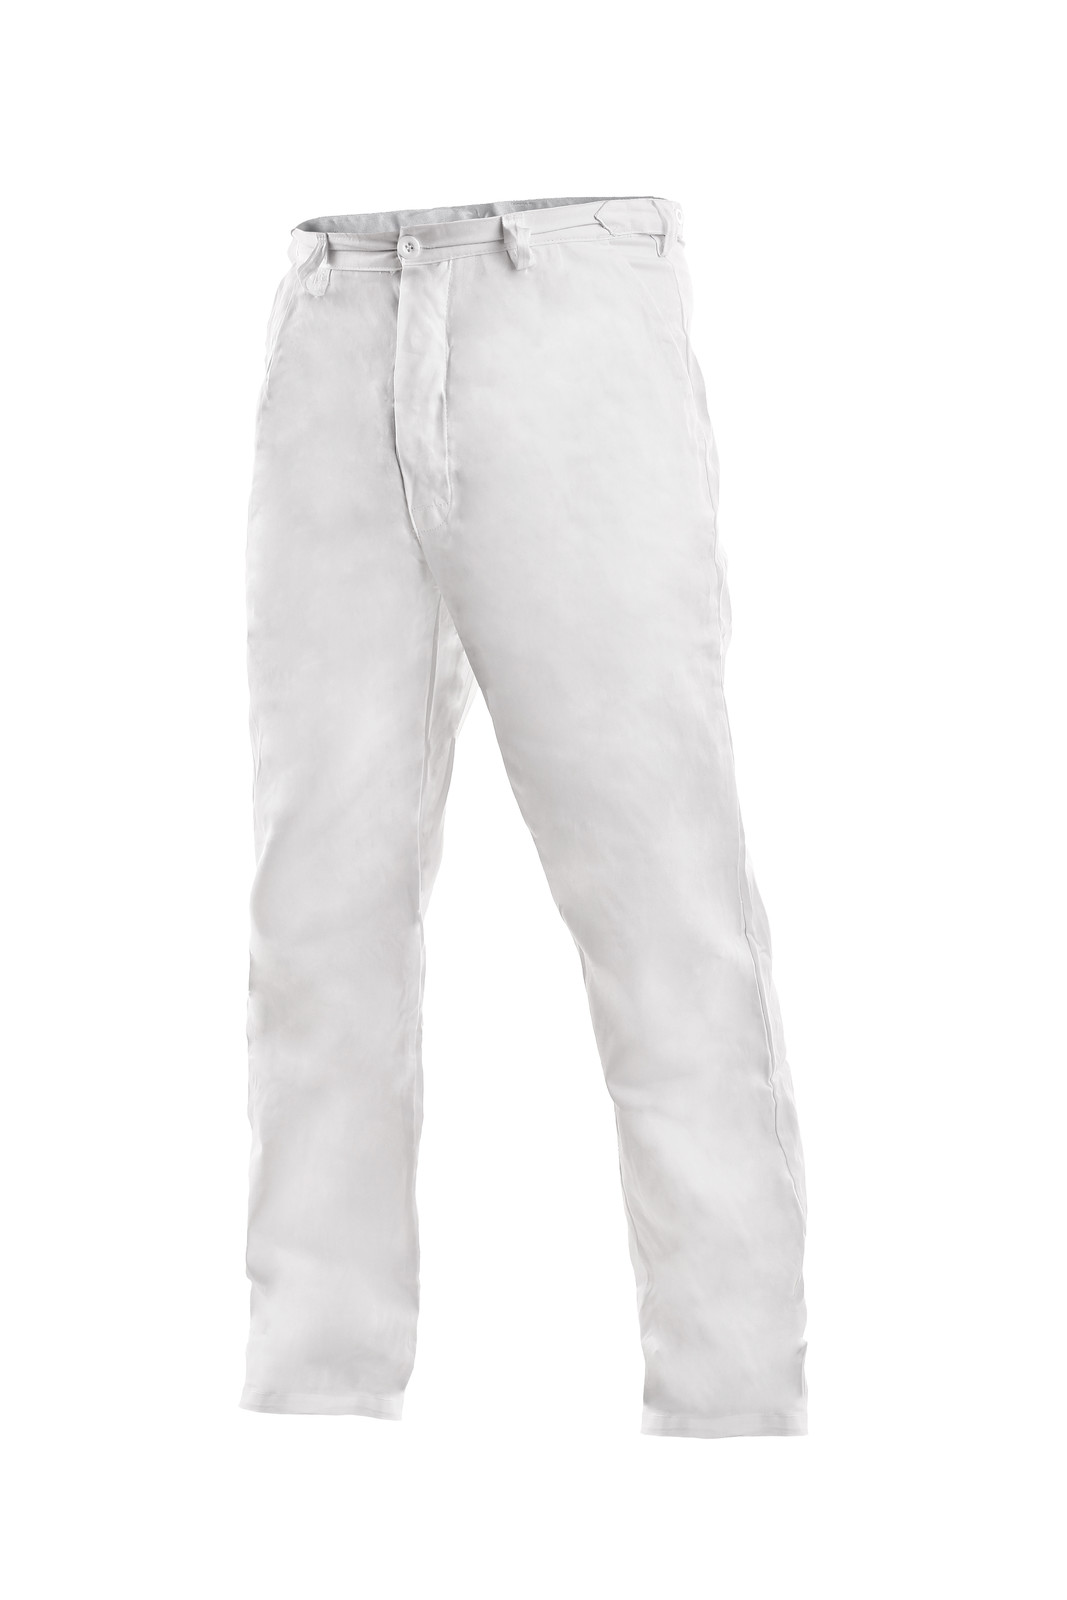 Pánske biele bavlnené nohavice Artur - veľkosť: 62, farba: biela